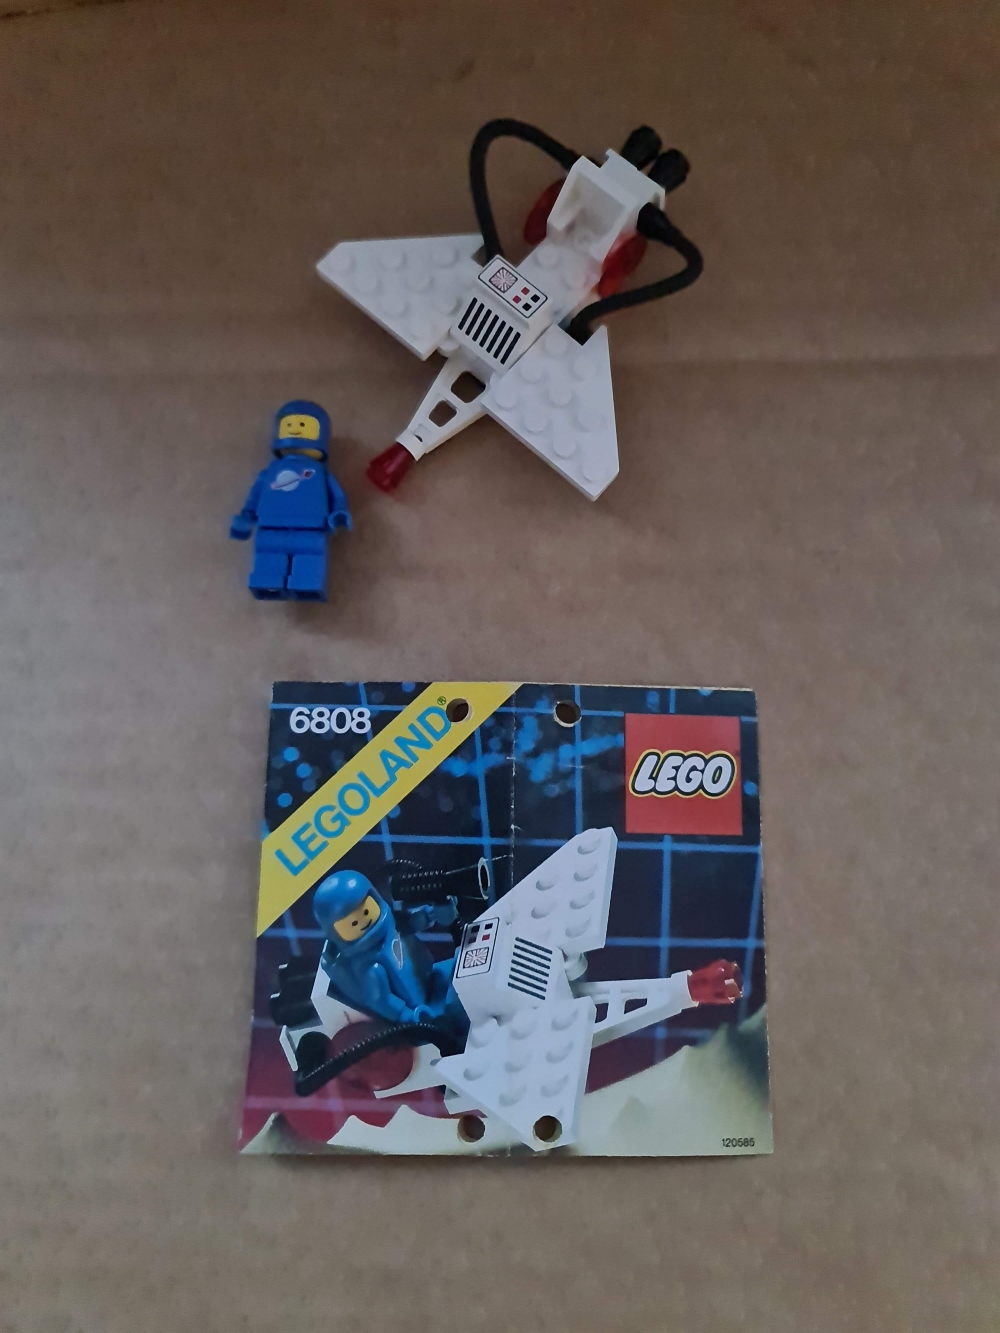 Sett 6808 fra Lego Classic Town serien.
Veldig fint sett. Komplett med manual.